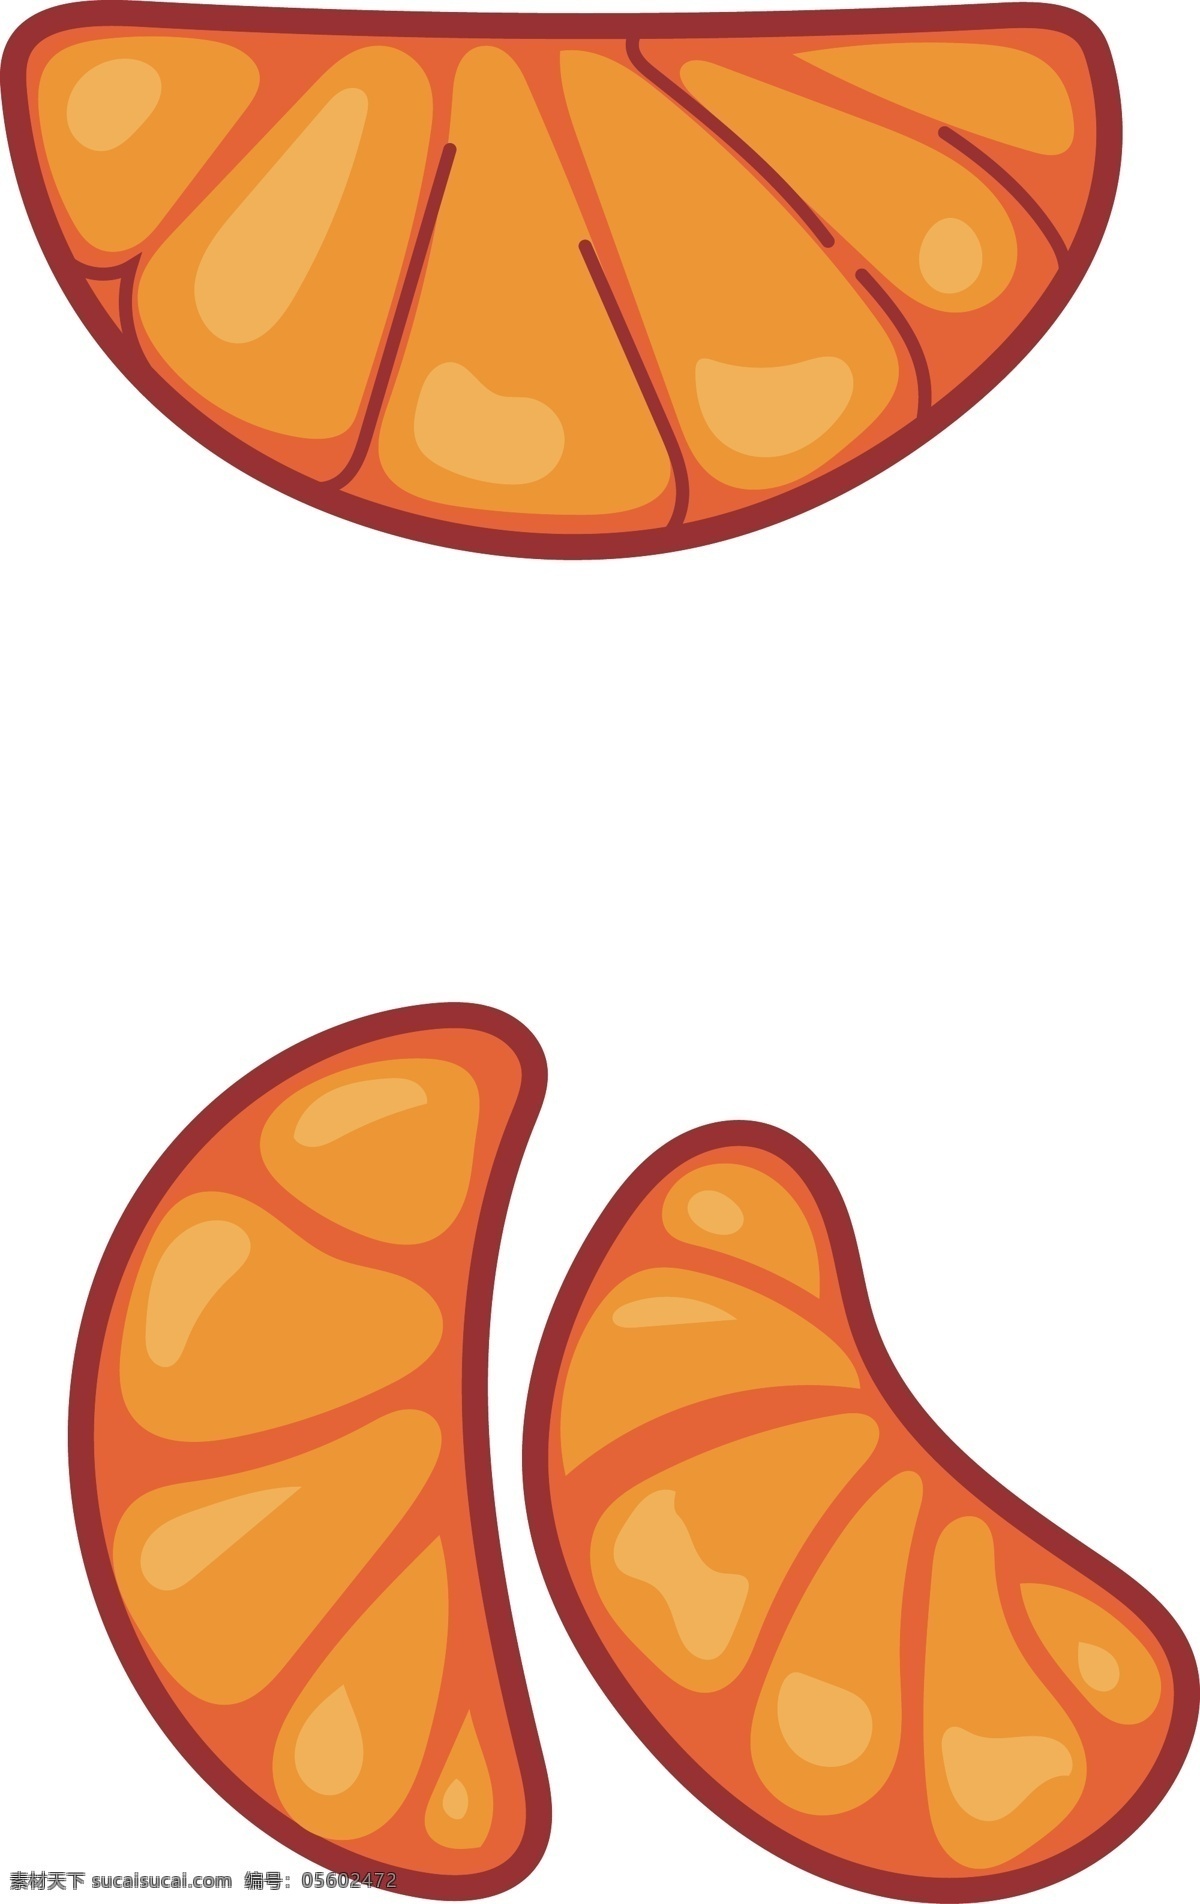 水果 橘子 瓣 造型 元素 卡通橘子瓣 卡通橘子 橘子造型 橘子图案 水果图案 水果装饰 橘子瓣 水果橘子